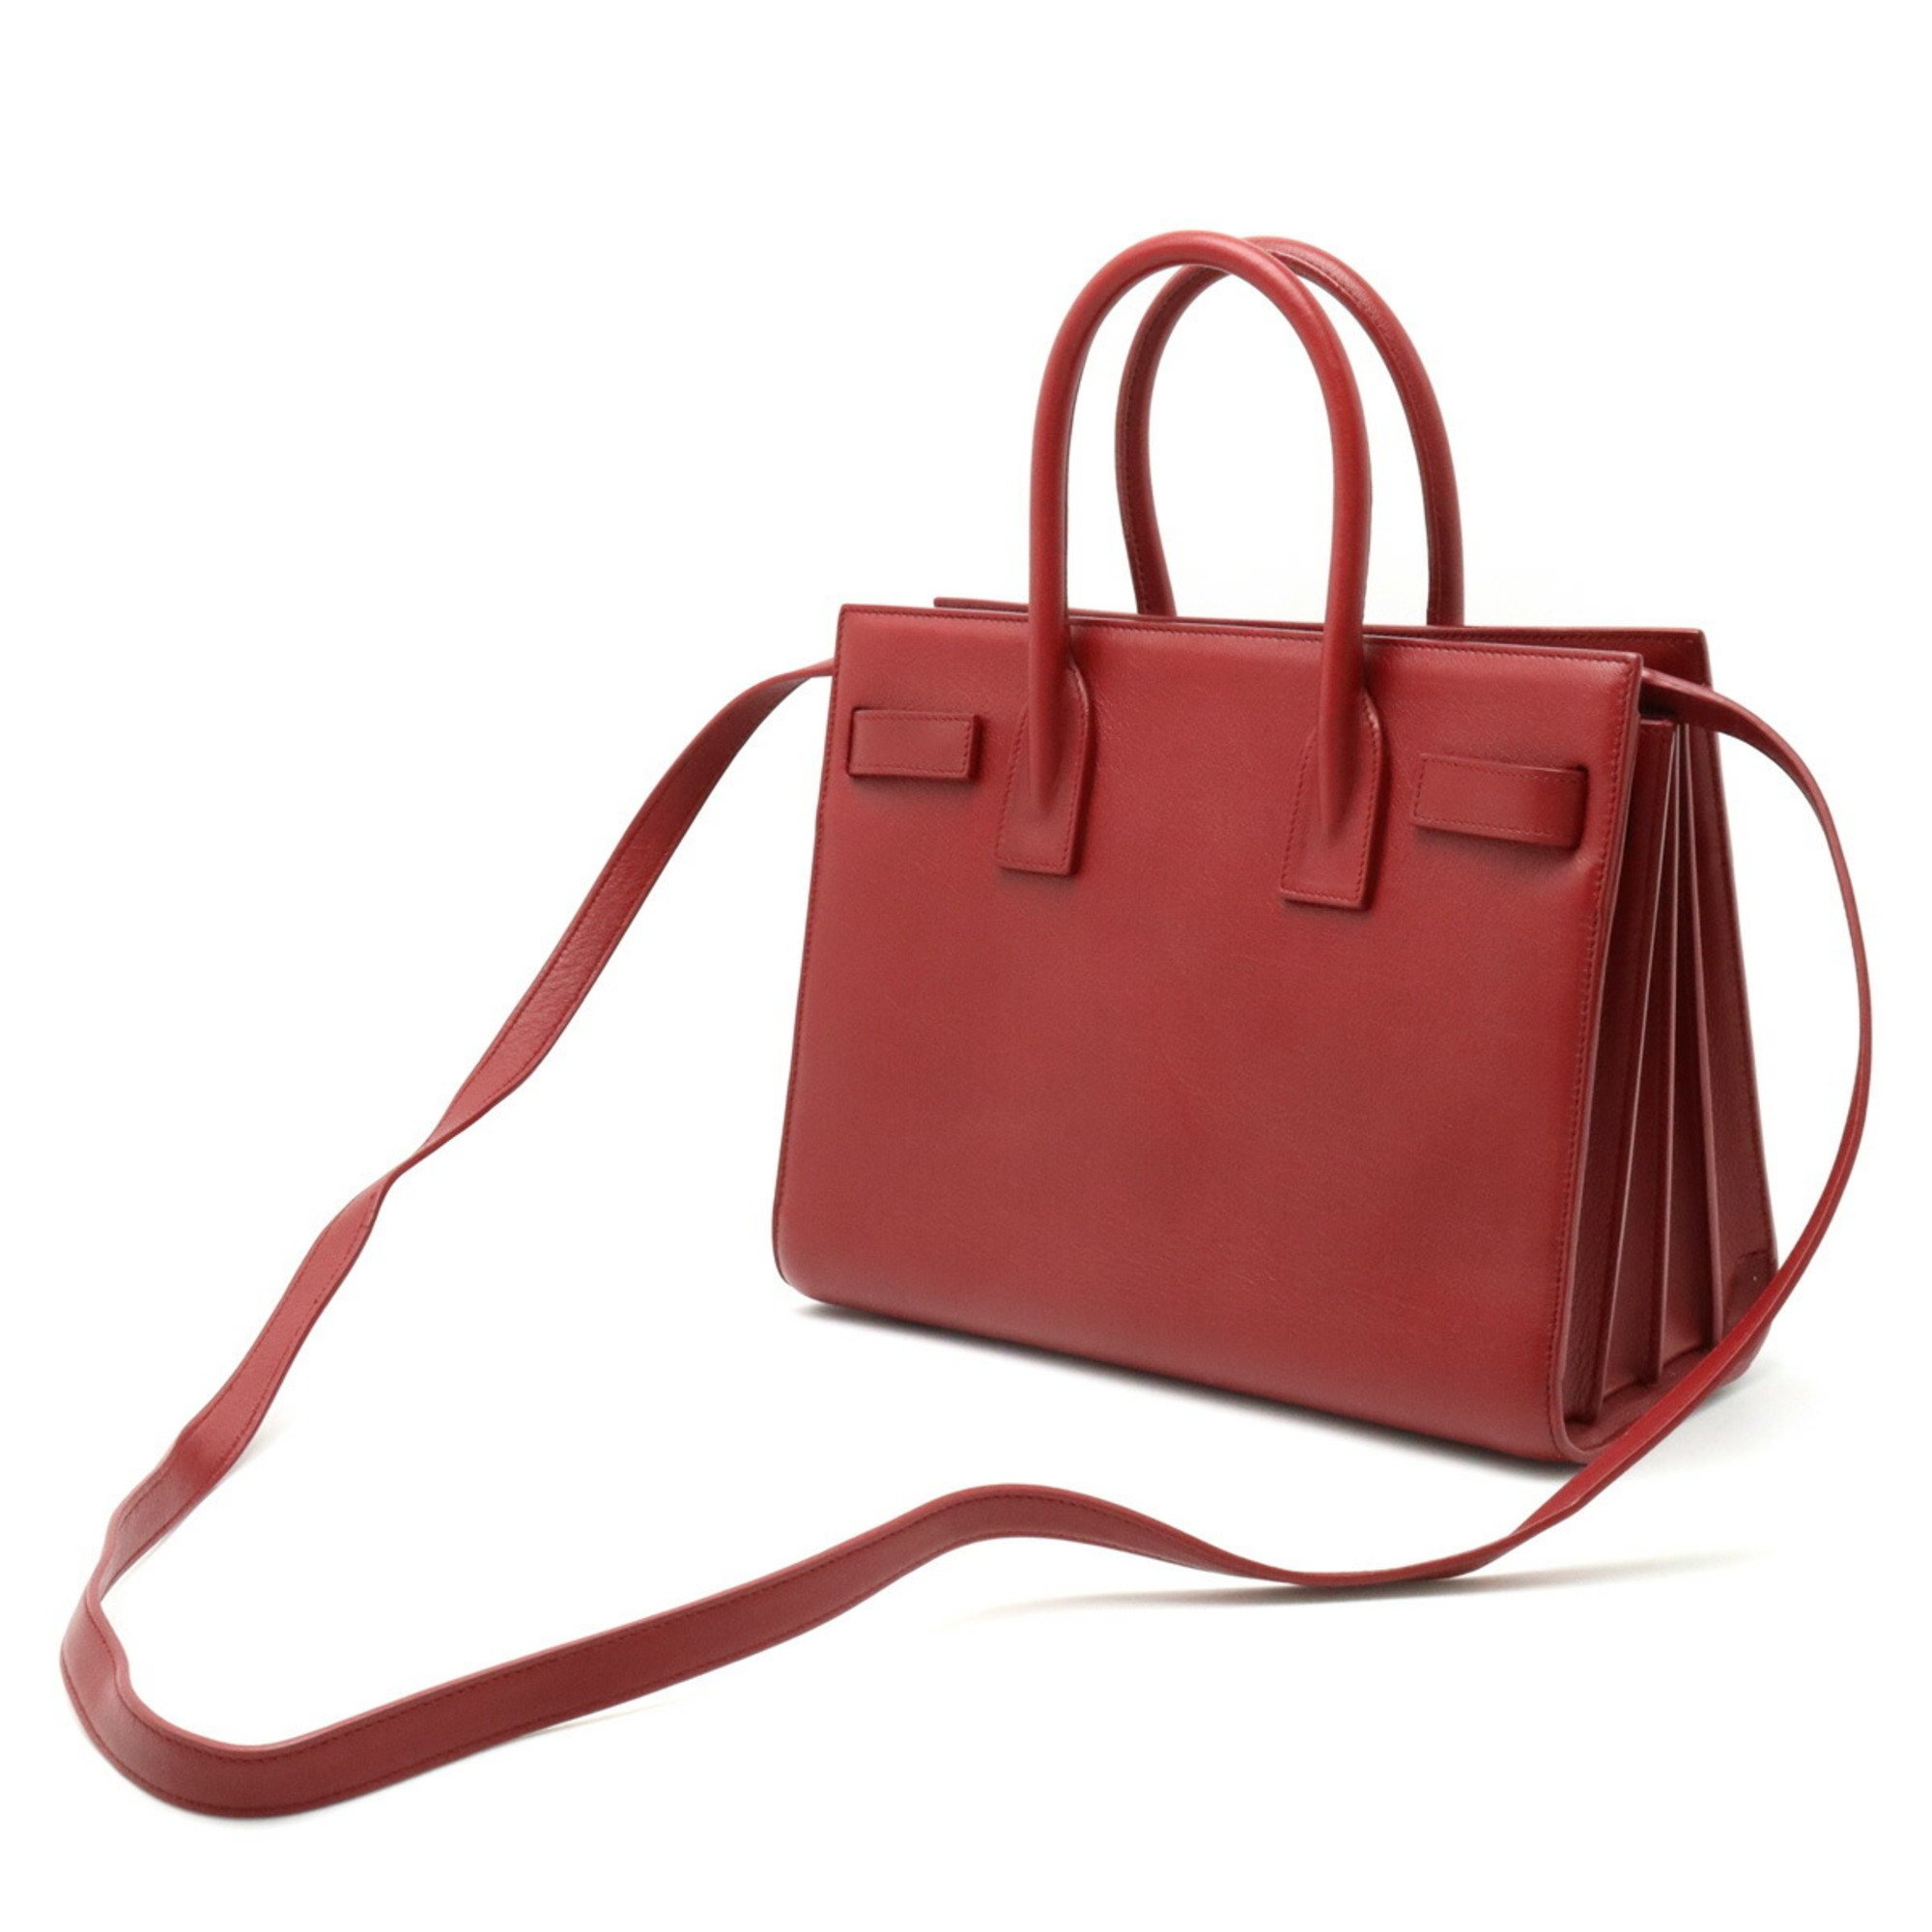 SAINT LAURENT PARIS YSL Yves Saint Laurent Sac de Jour Handbag Shoulder Leather Red 477477